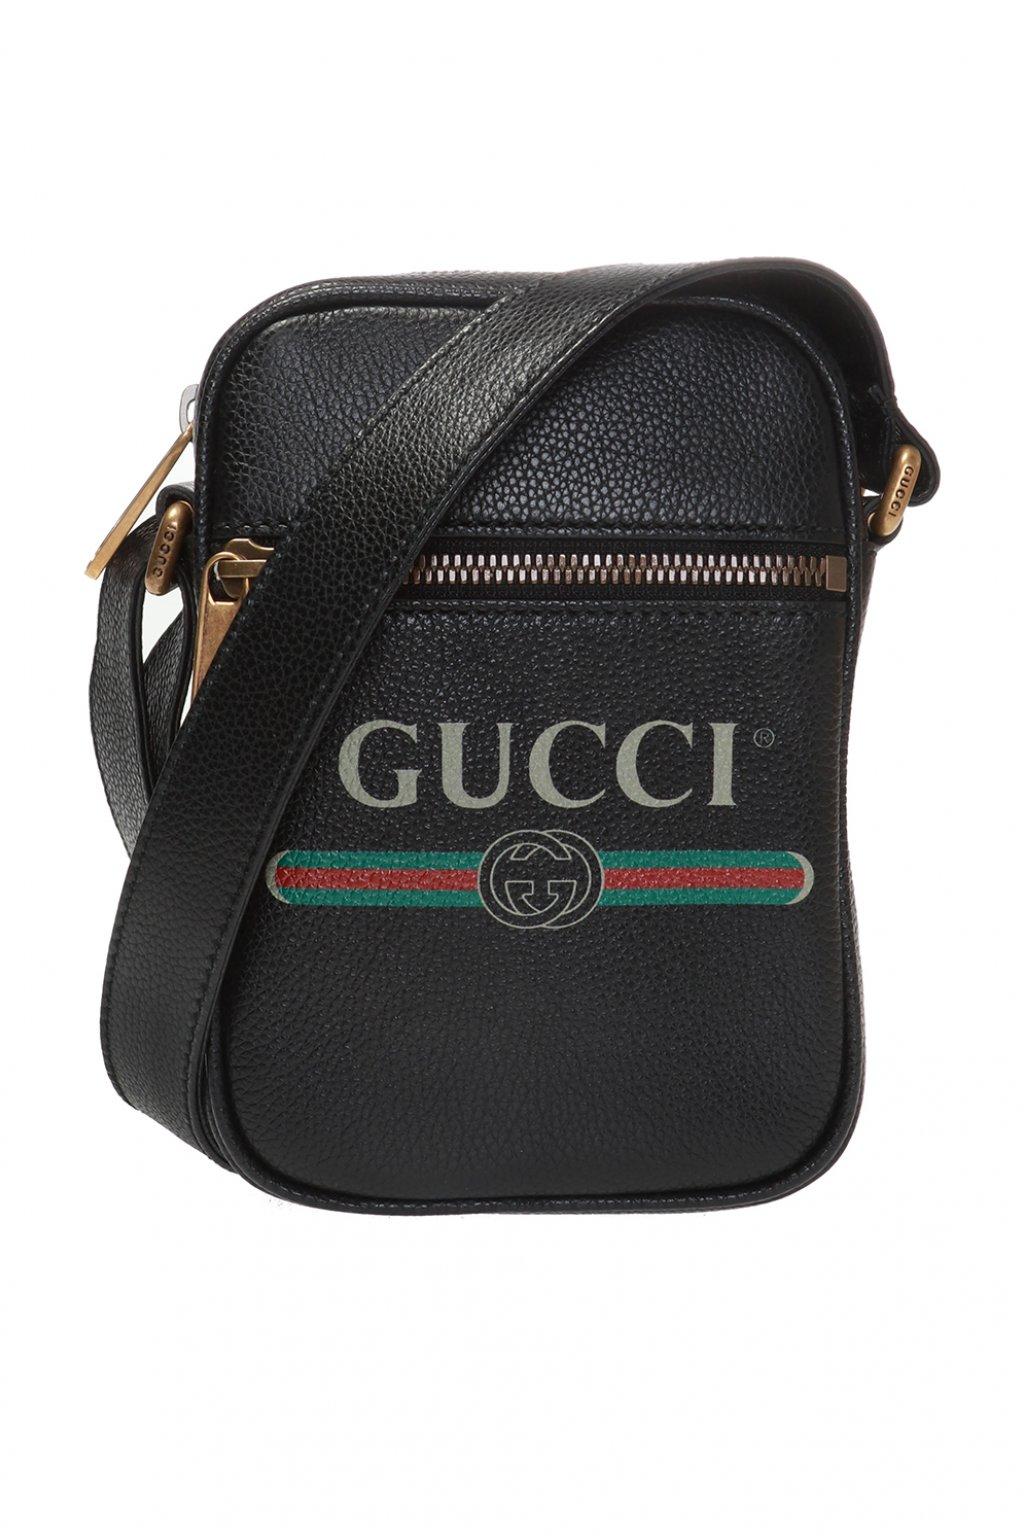 Gucci Web Stripe Shoulder Bag in Black for Men - Lyst